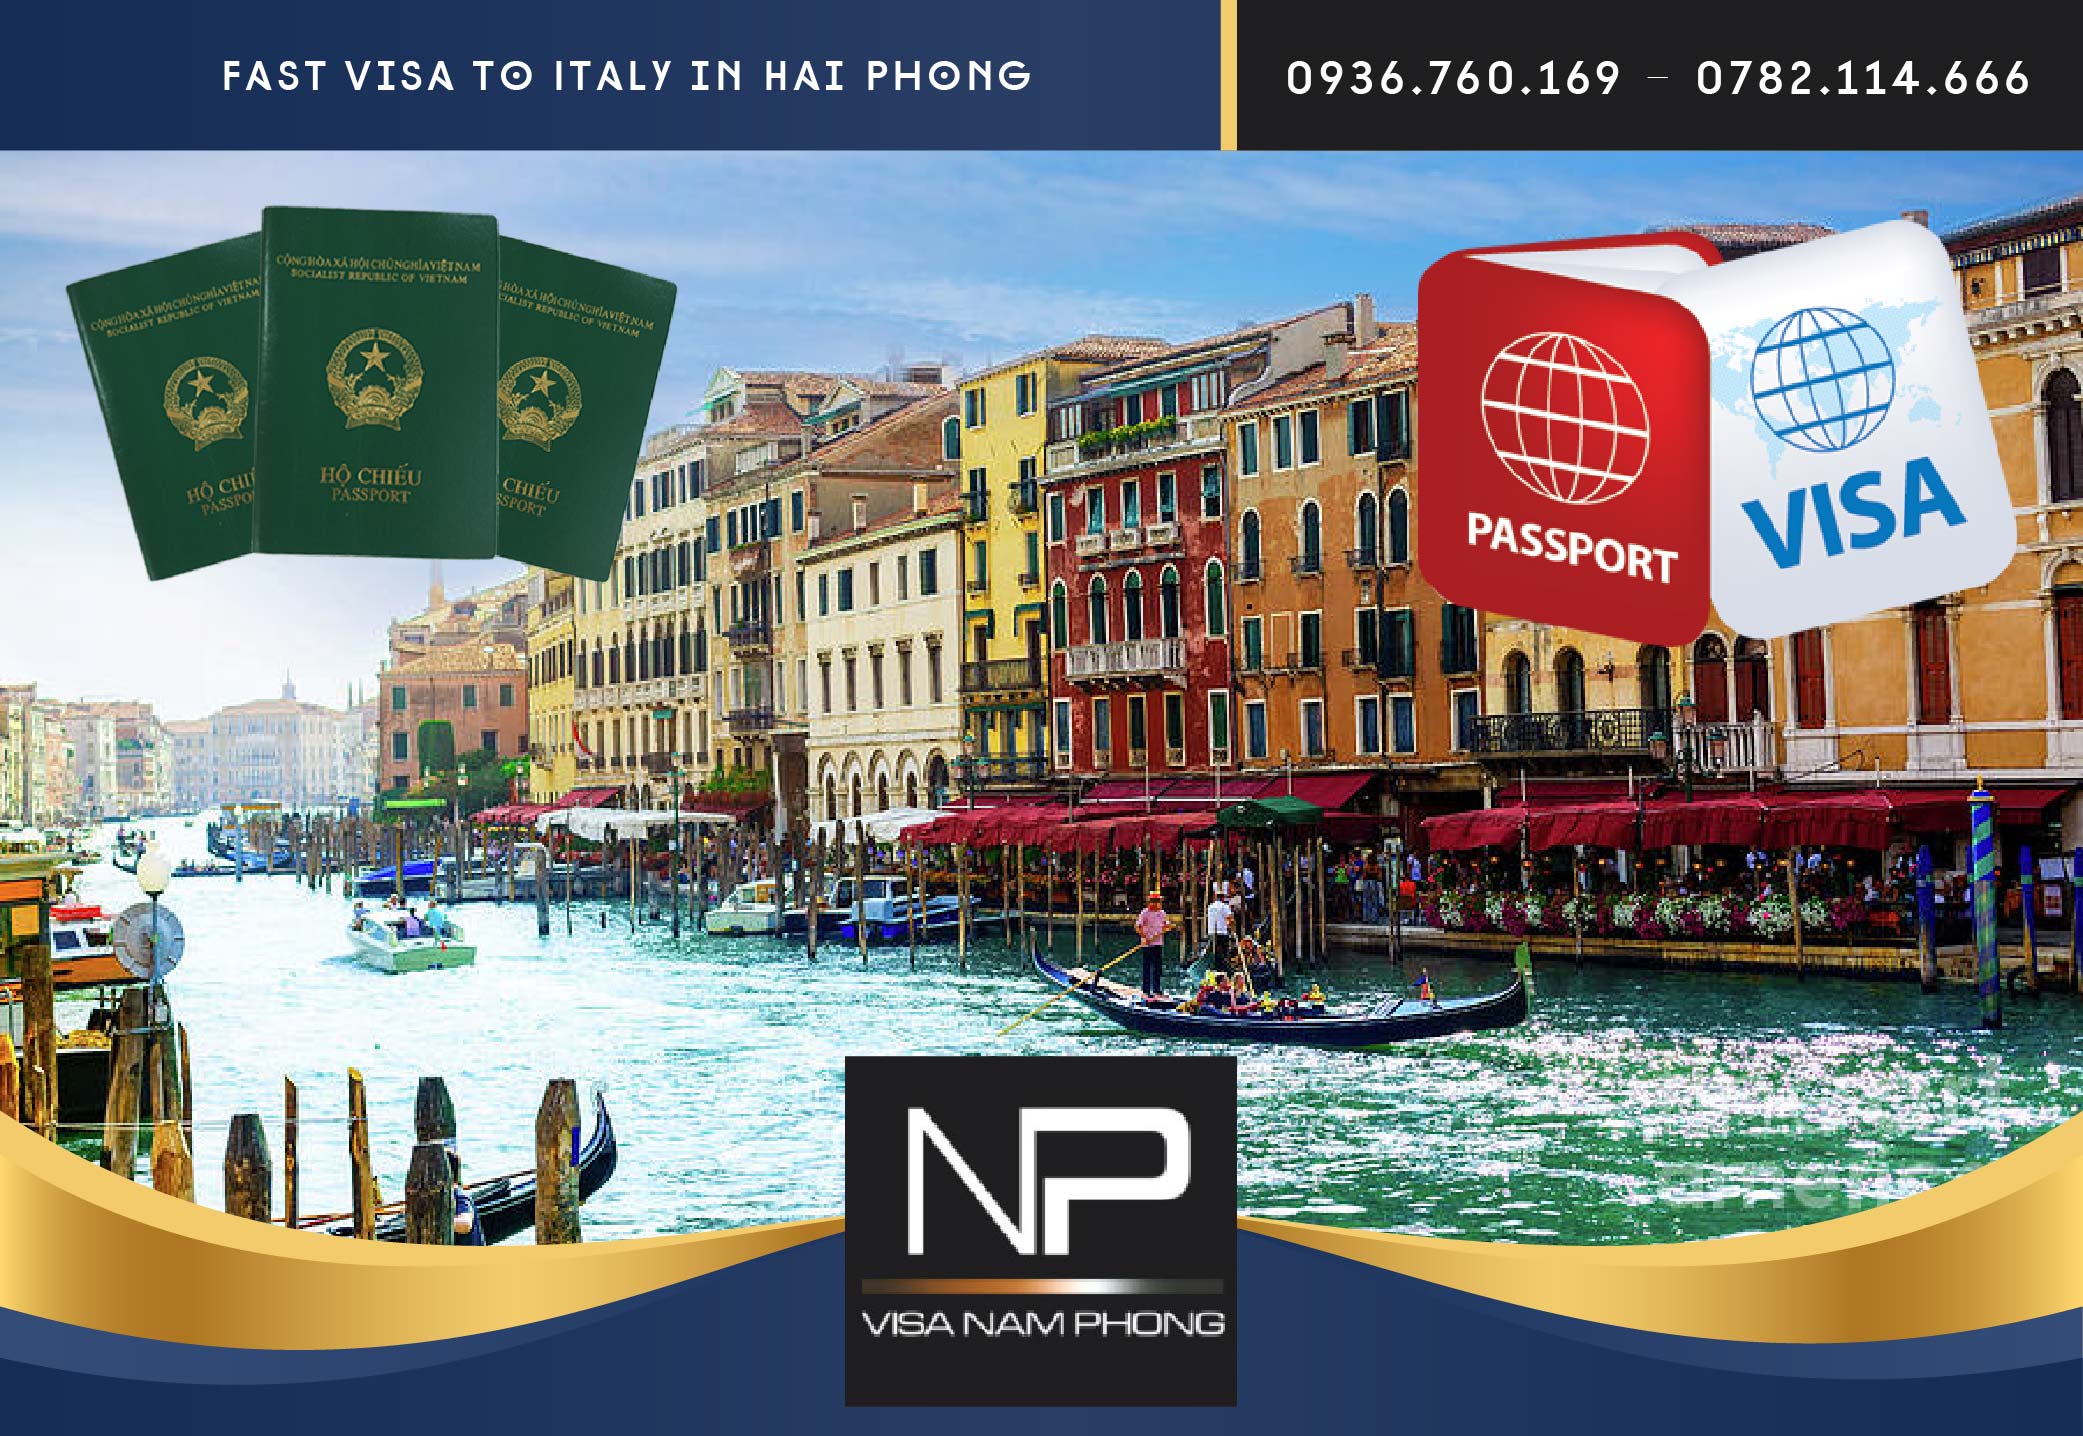 Fast visa to Italy in Hai Phong